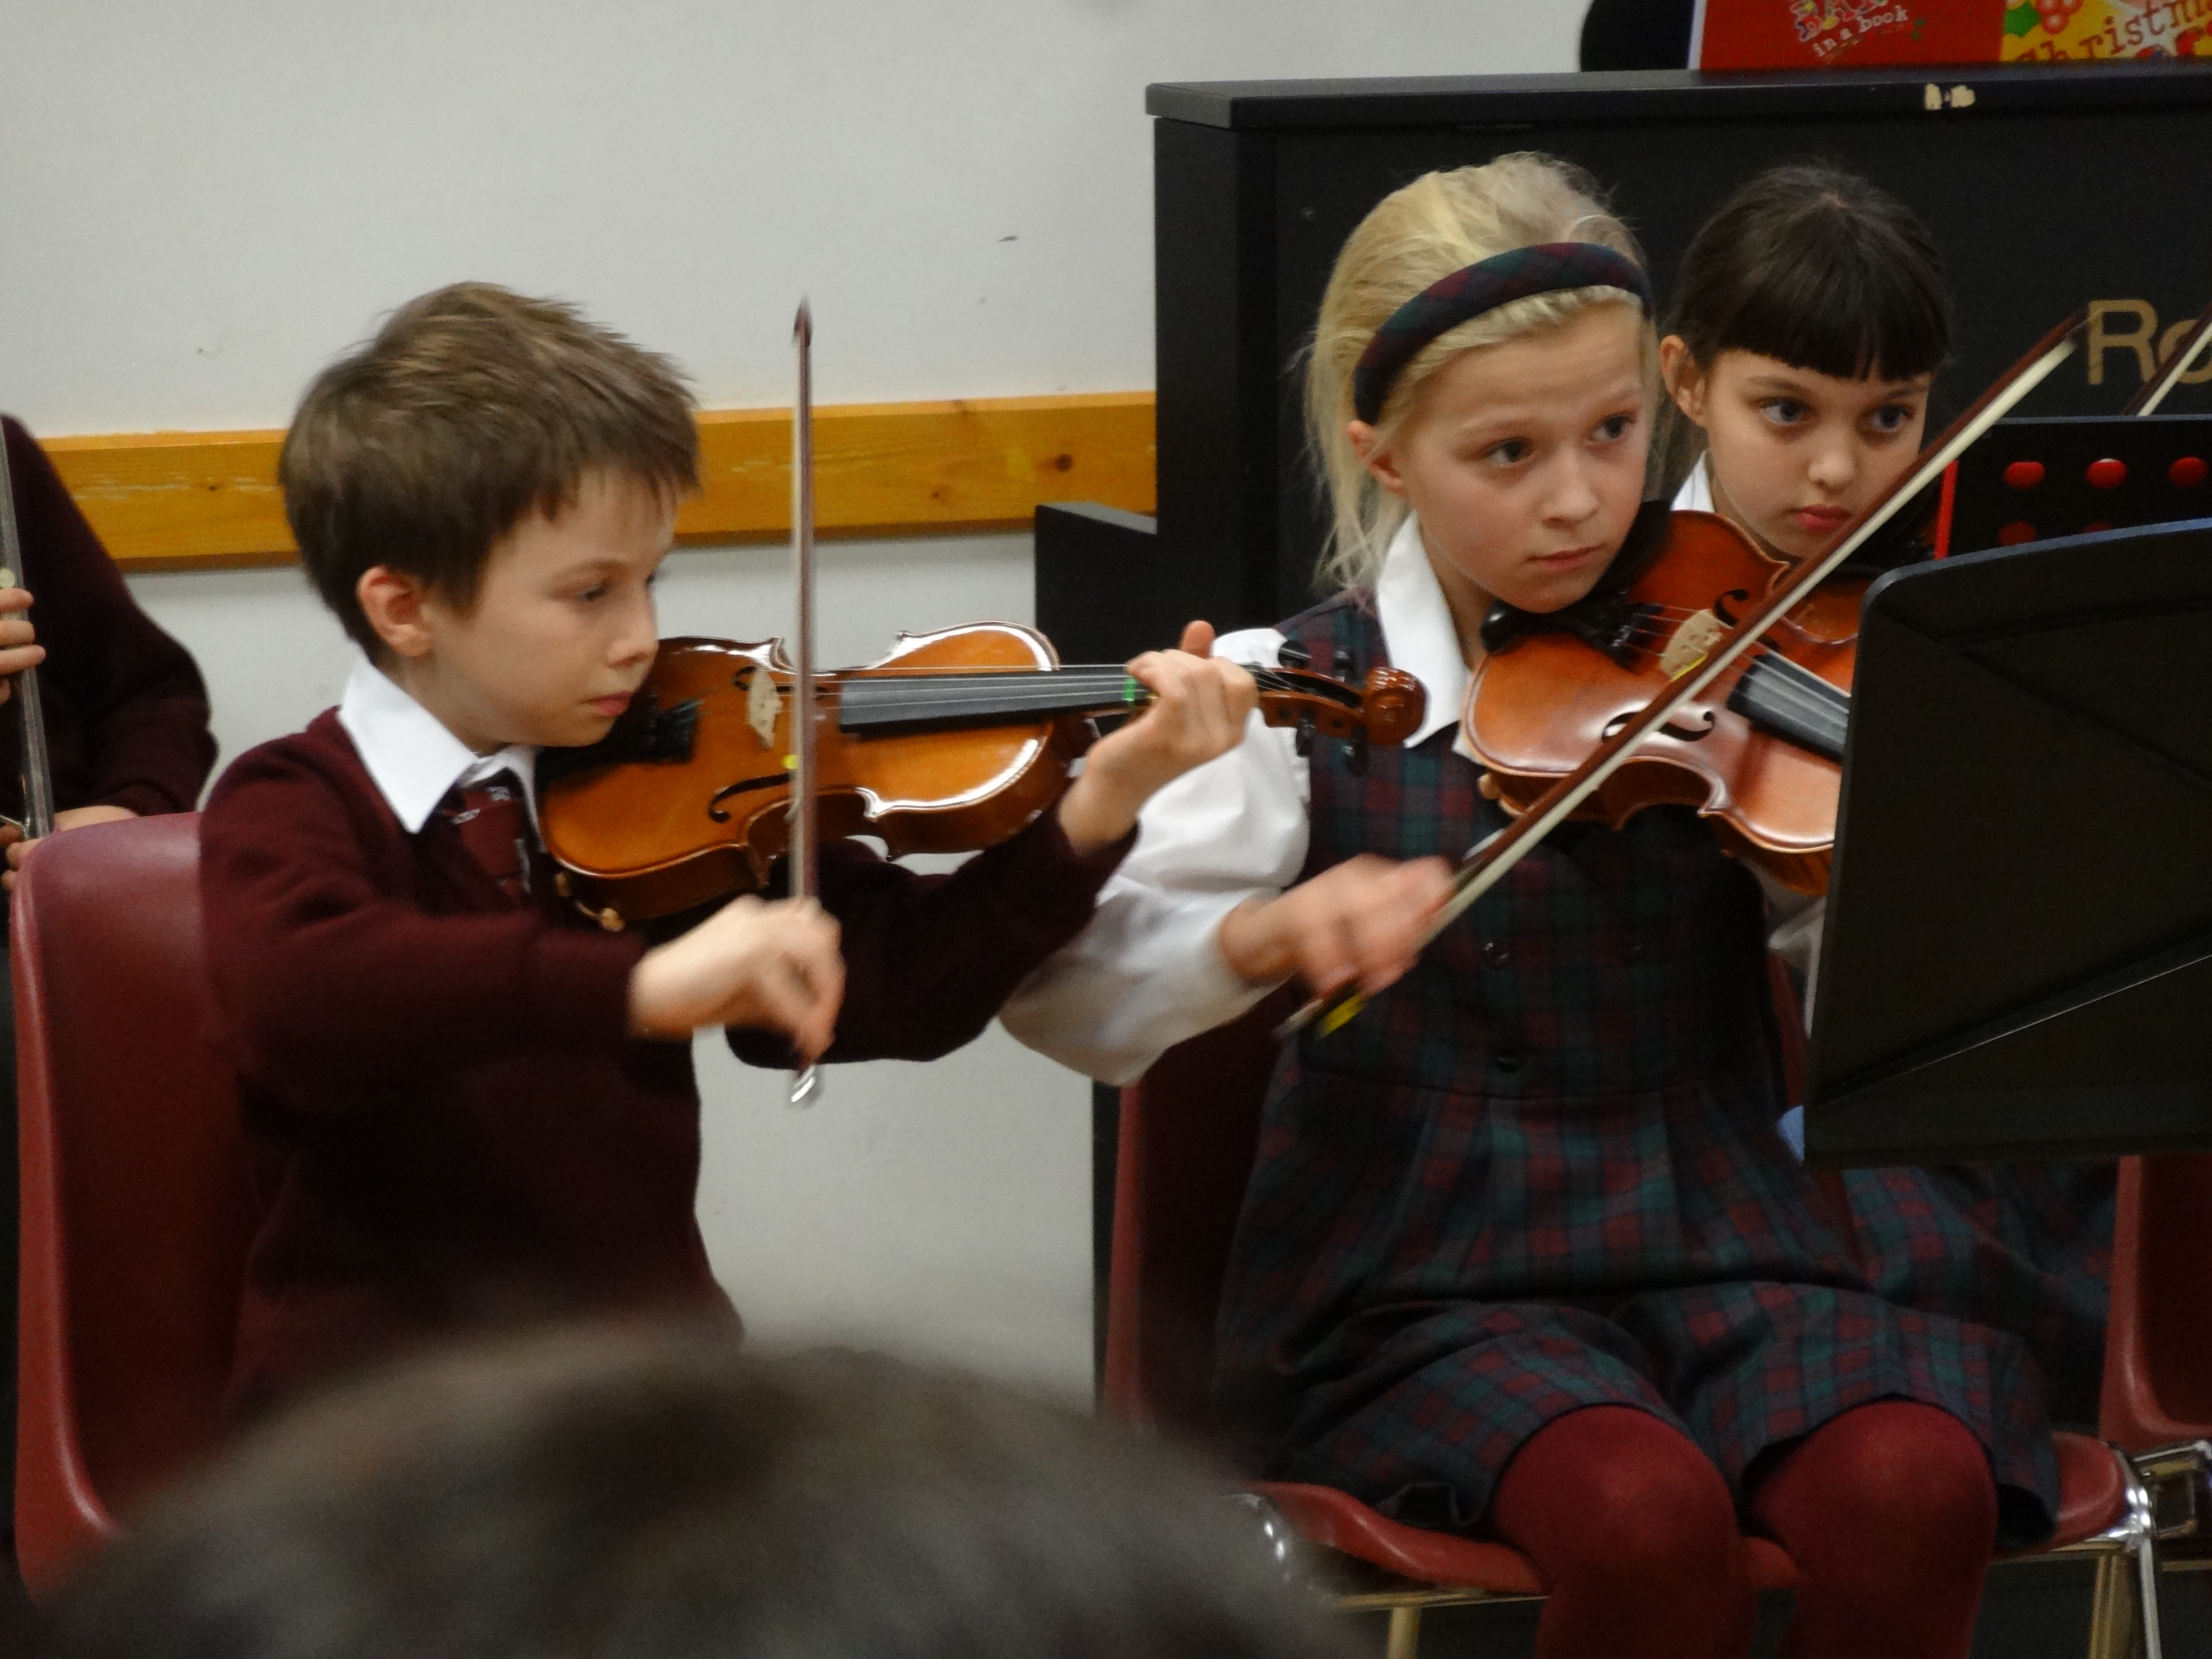 Junior Michaelmas Concert in Cobham Hall, 28th November 2014